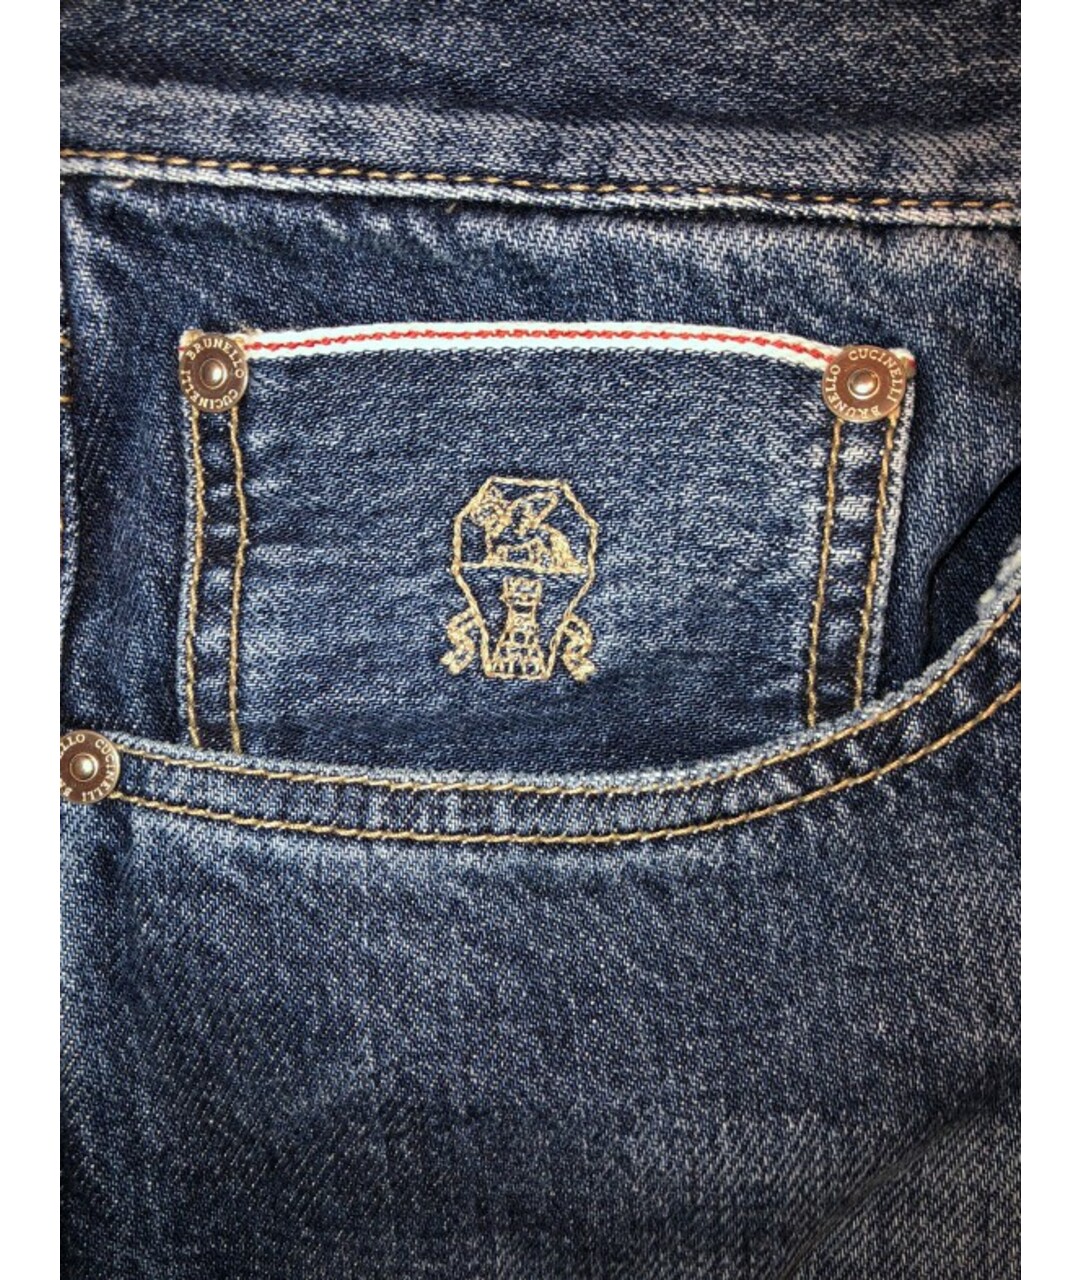 BRUNELLO CUCINELLI Темно-синие хлопковые прямые джинсы, фото 4